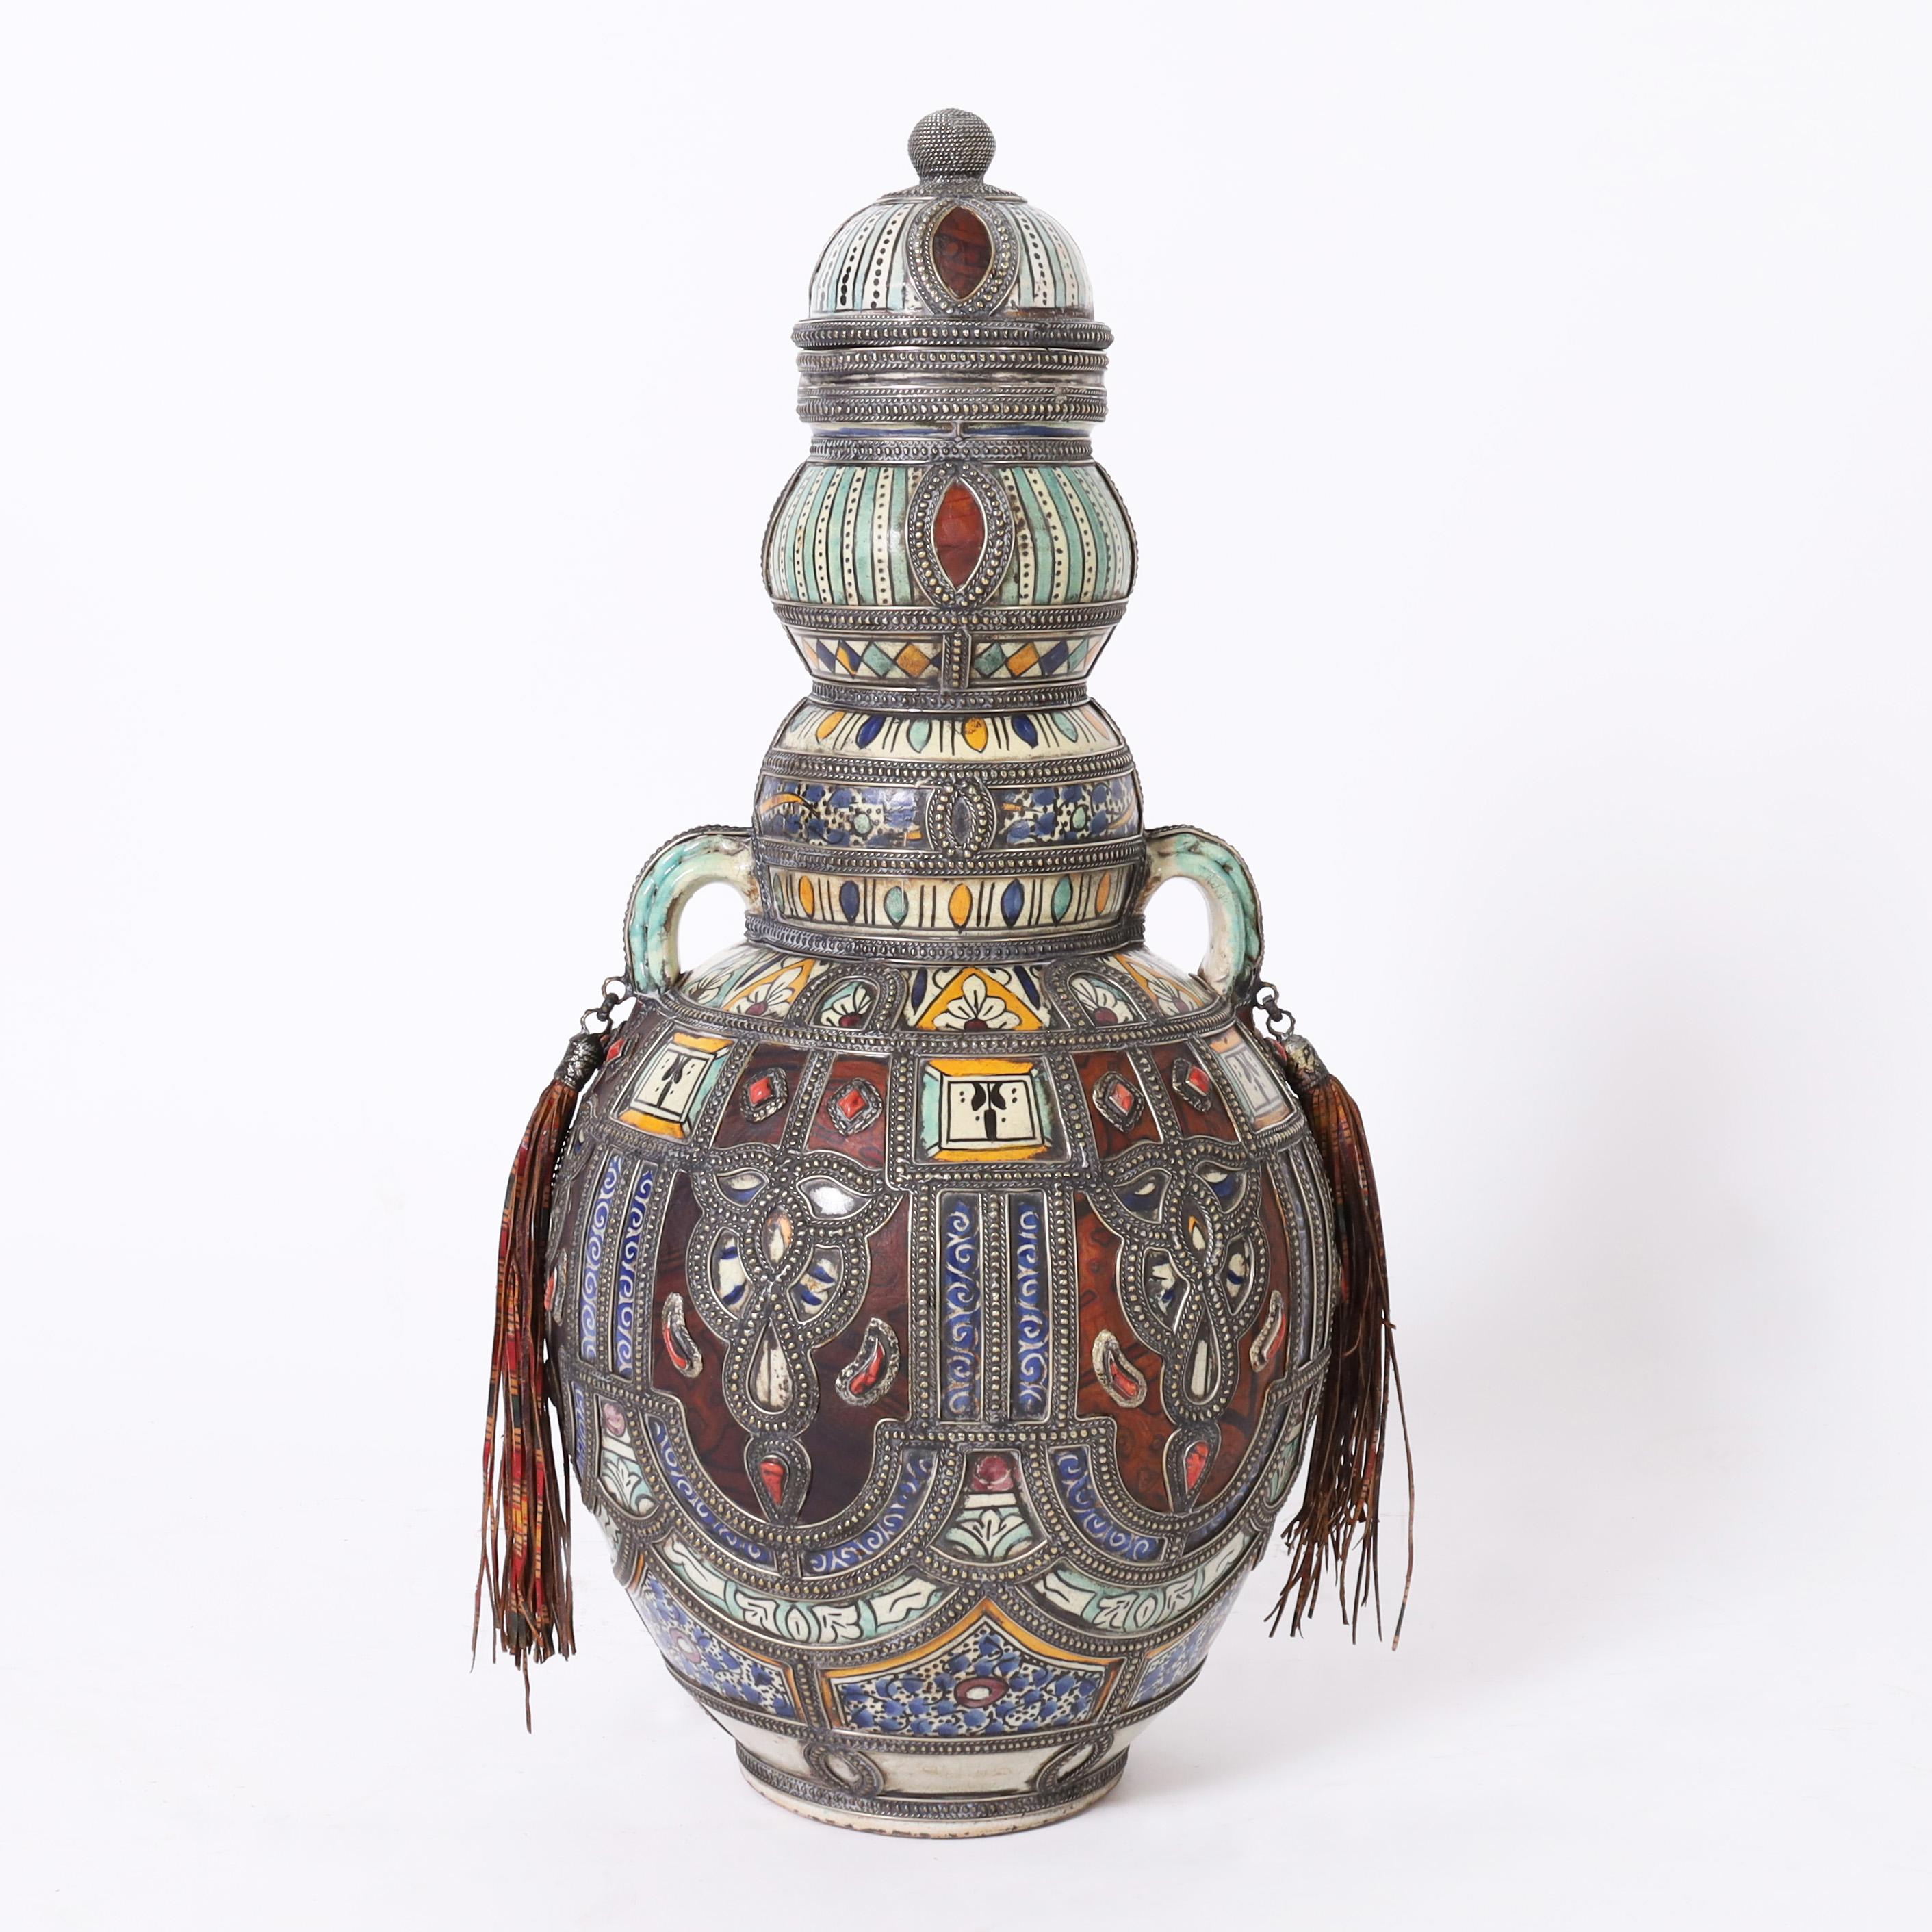 Beeindruckendes Vintage-Paar marokkanischer Urnen mit Deckel, handgefertigt aus Terrakotta, verziert und glasiert in unverwechselbarer mediterraner Farbe, mit schmuckähnlichen handgefertigten Metallarbeiten mit Halbedelsteinen und Lederpaneelen und